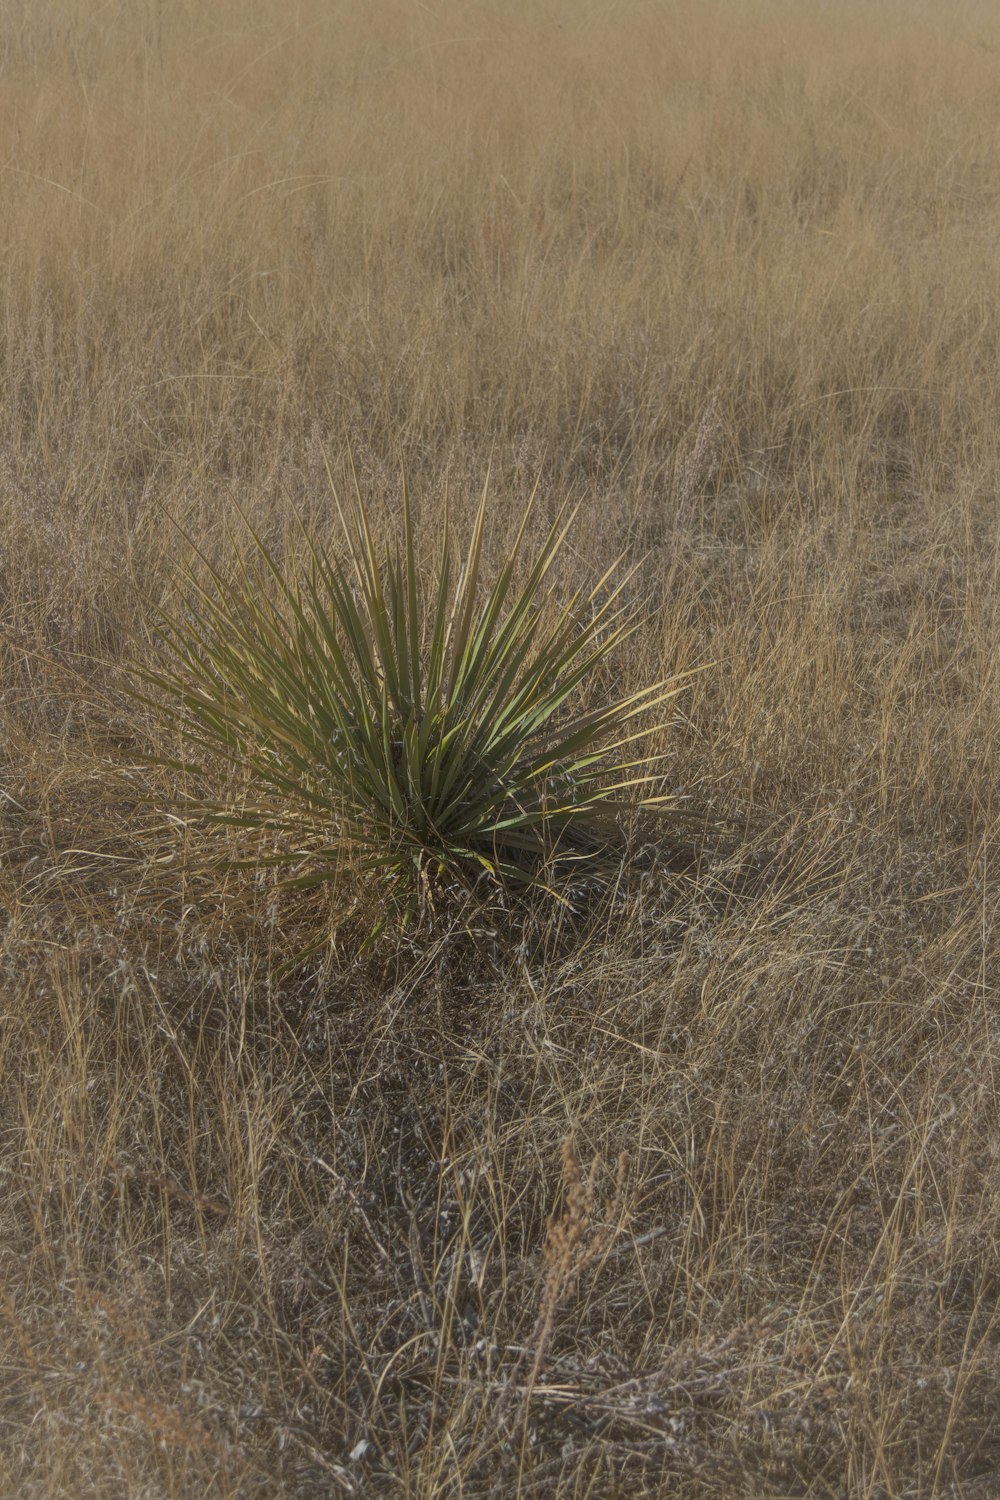 Eine einsame Pflanze mitten auf einem Feld